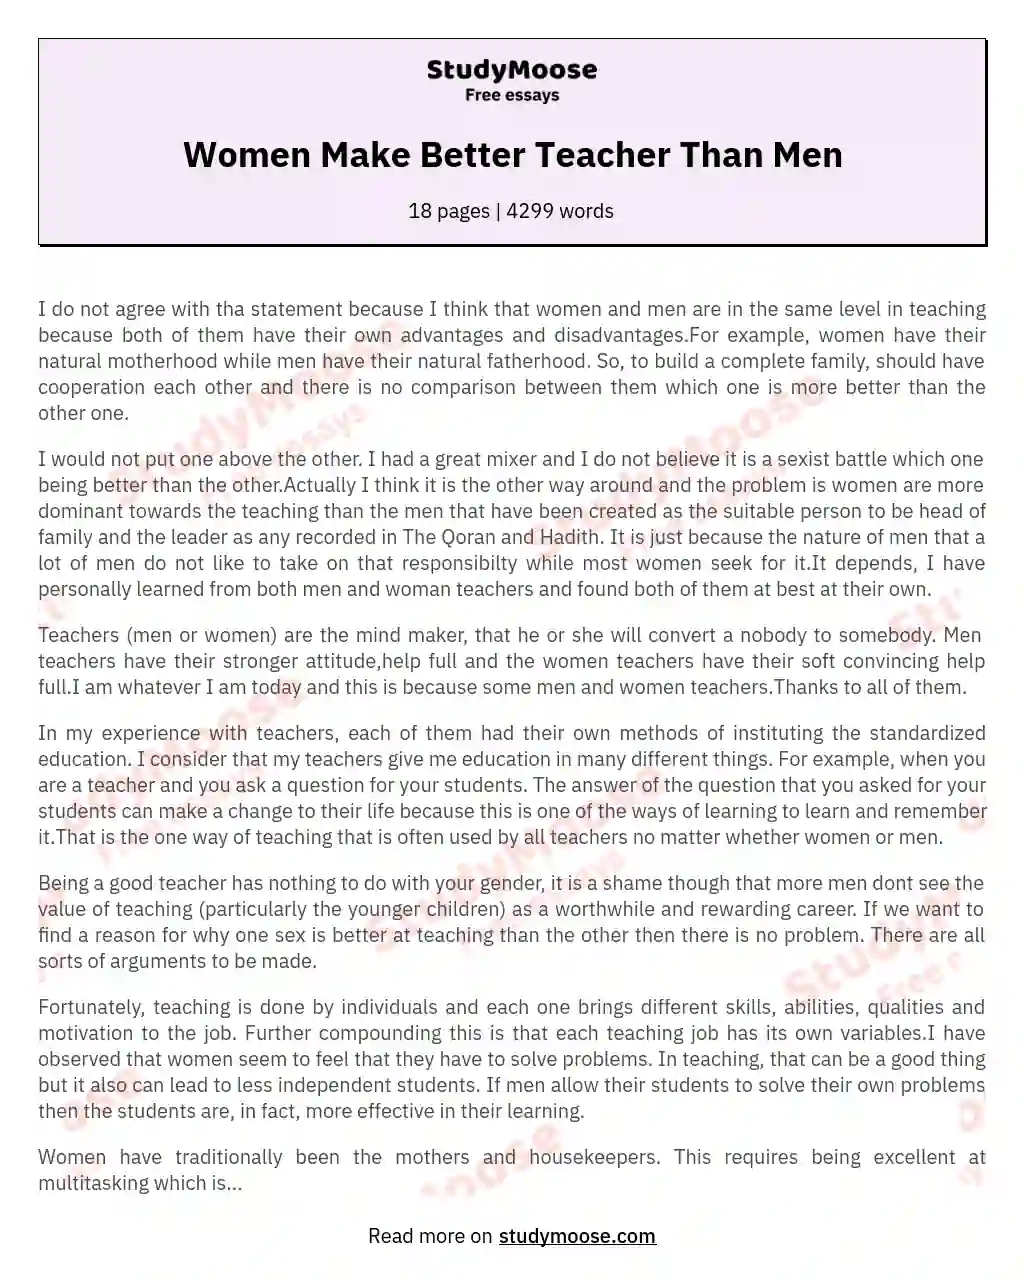 Women Make Better Teacher Than Men essay